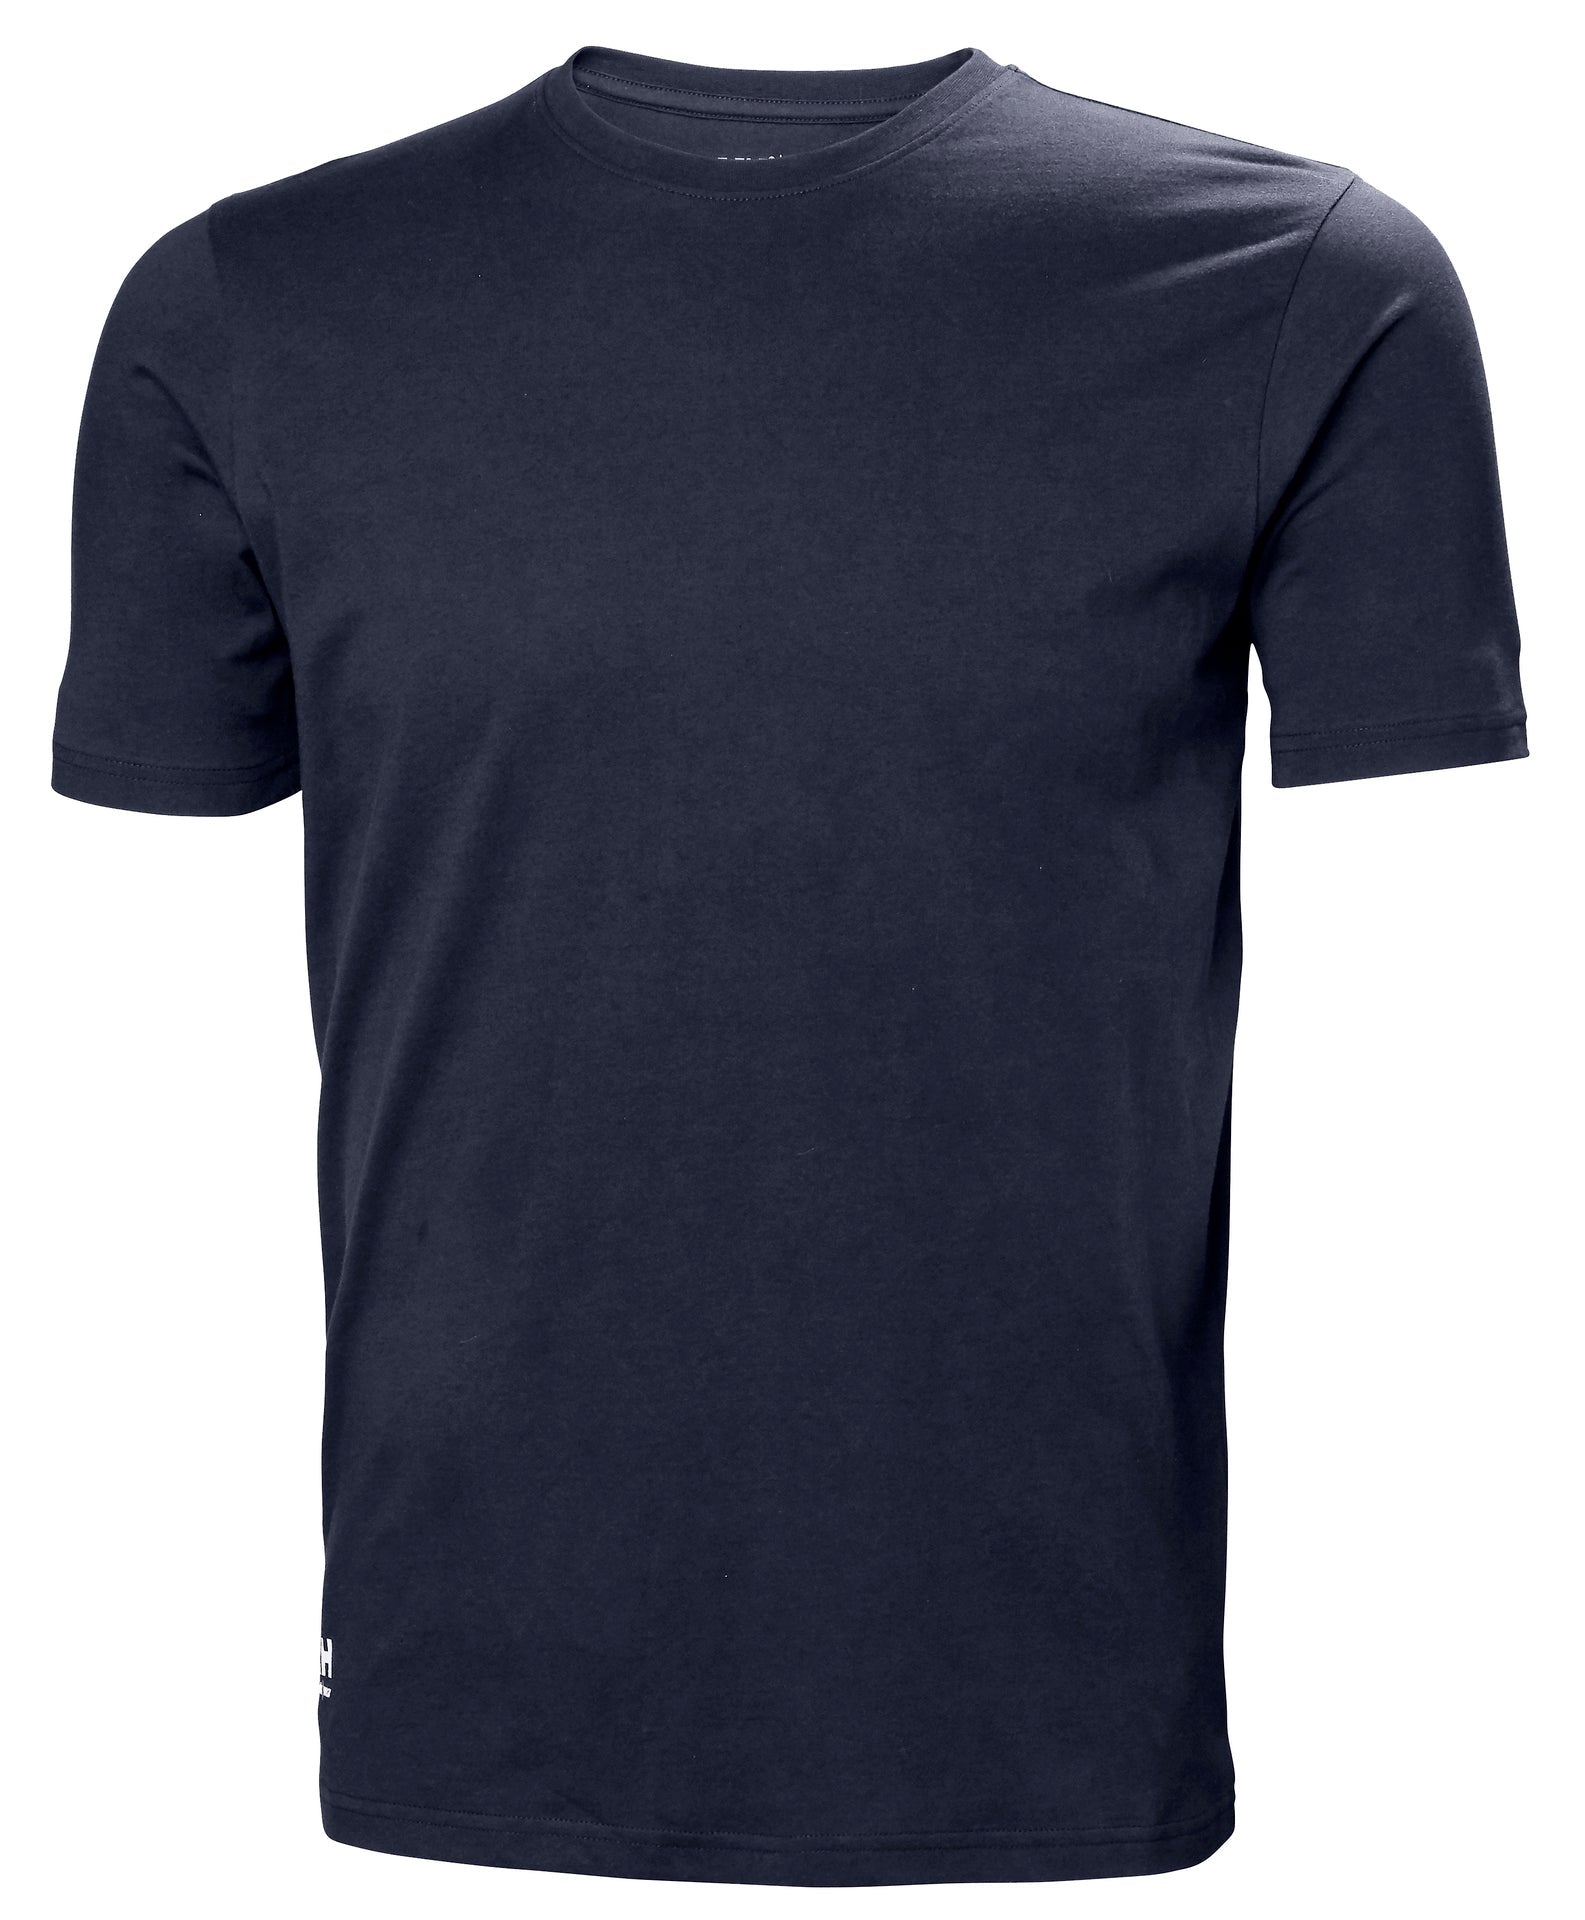 Helly Hansen Manchester T-Shirt - Navy